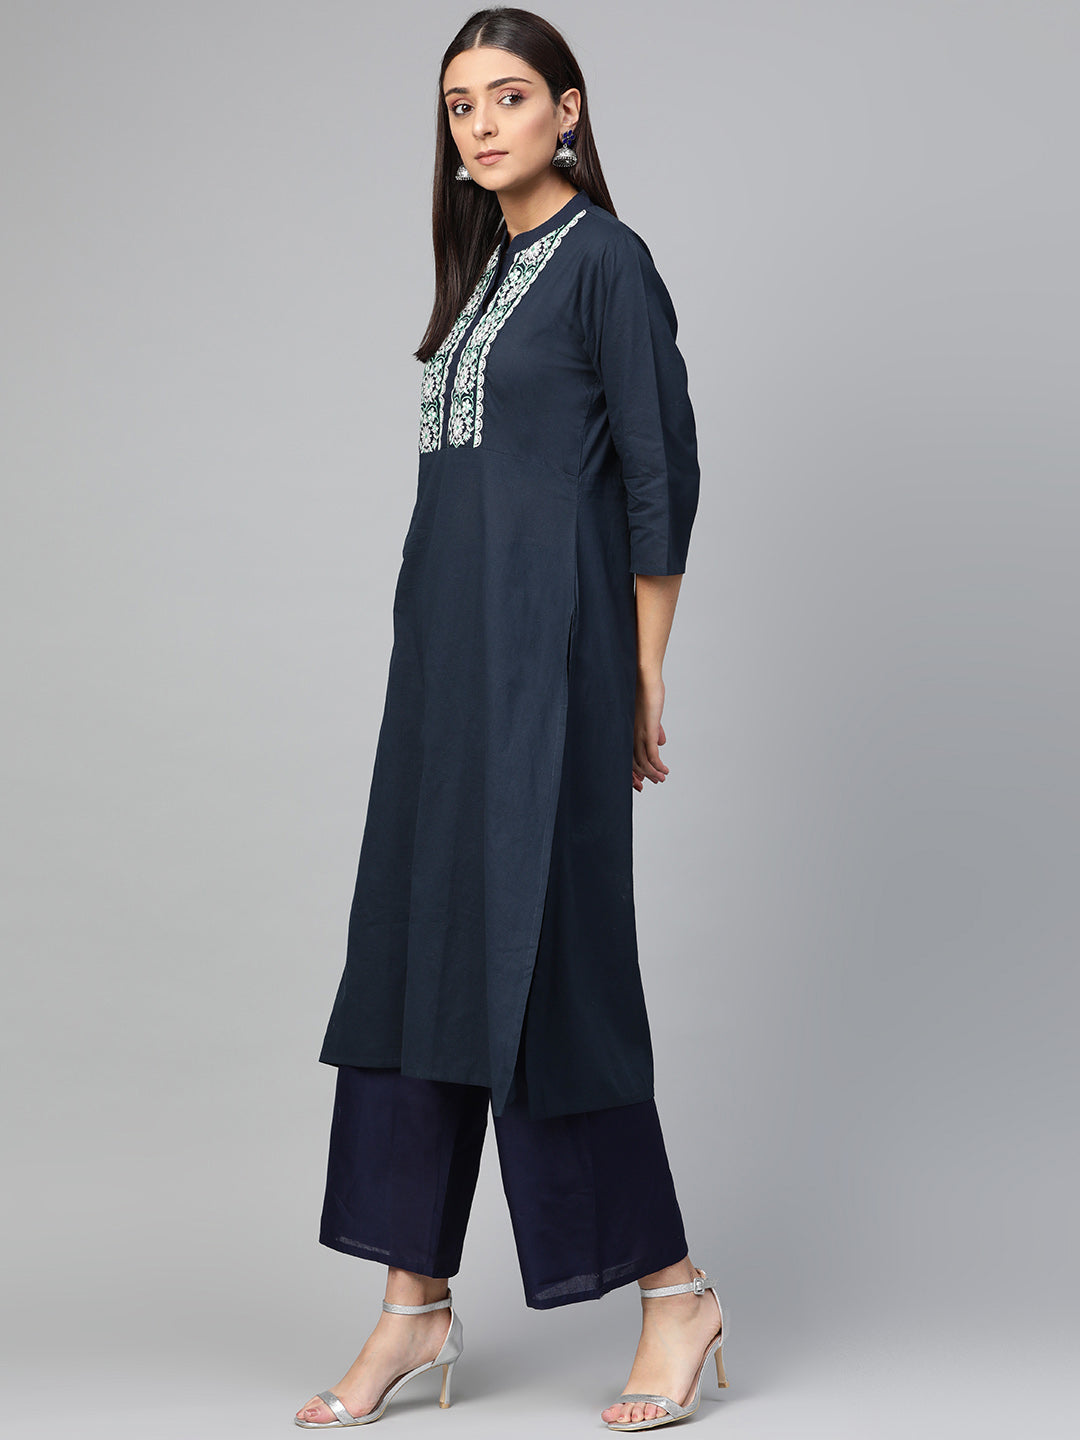 Bhama Couture Women Blue Ethnic Motifs Yoke Design Panelled Kurti with Palazzos